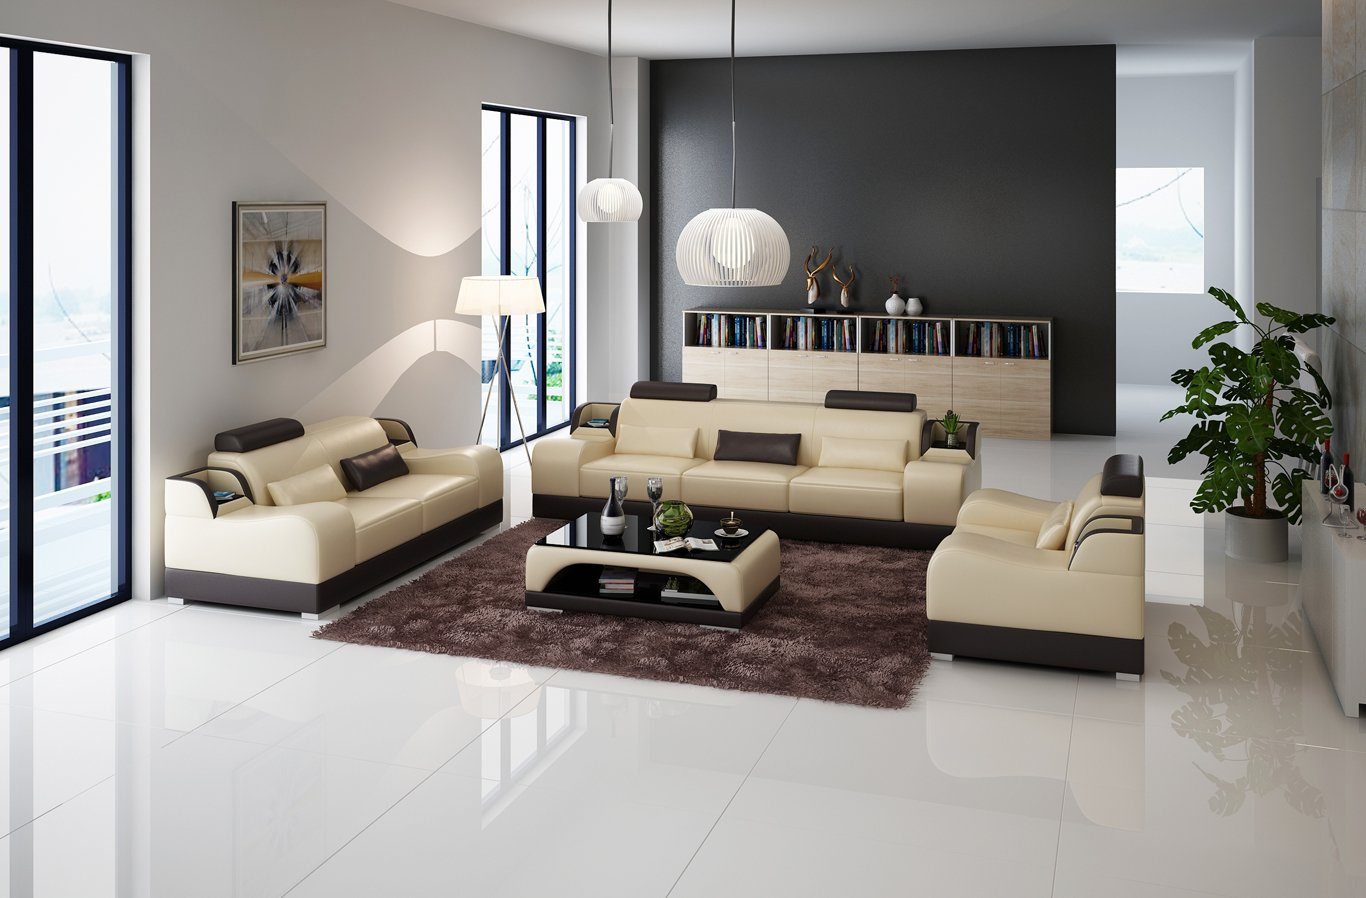 JVmoebel Sofa Design Sofas 2x 3 Sitzer Set Sofas Polster Couchen Moderne Gruppe Beige/Braun